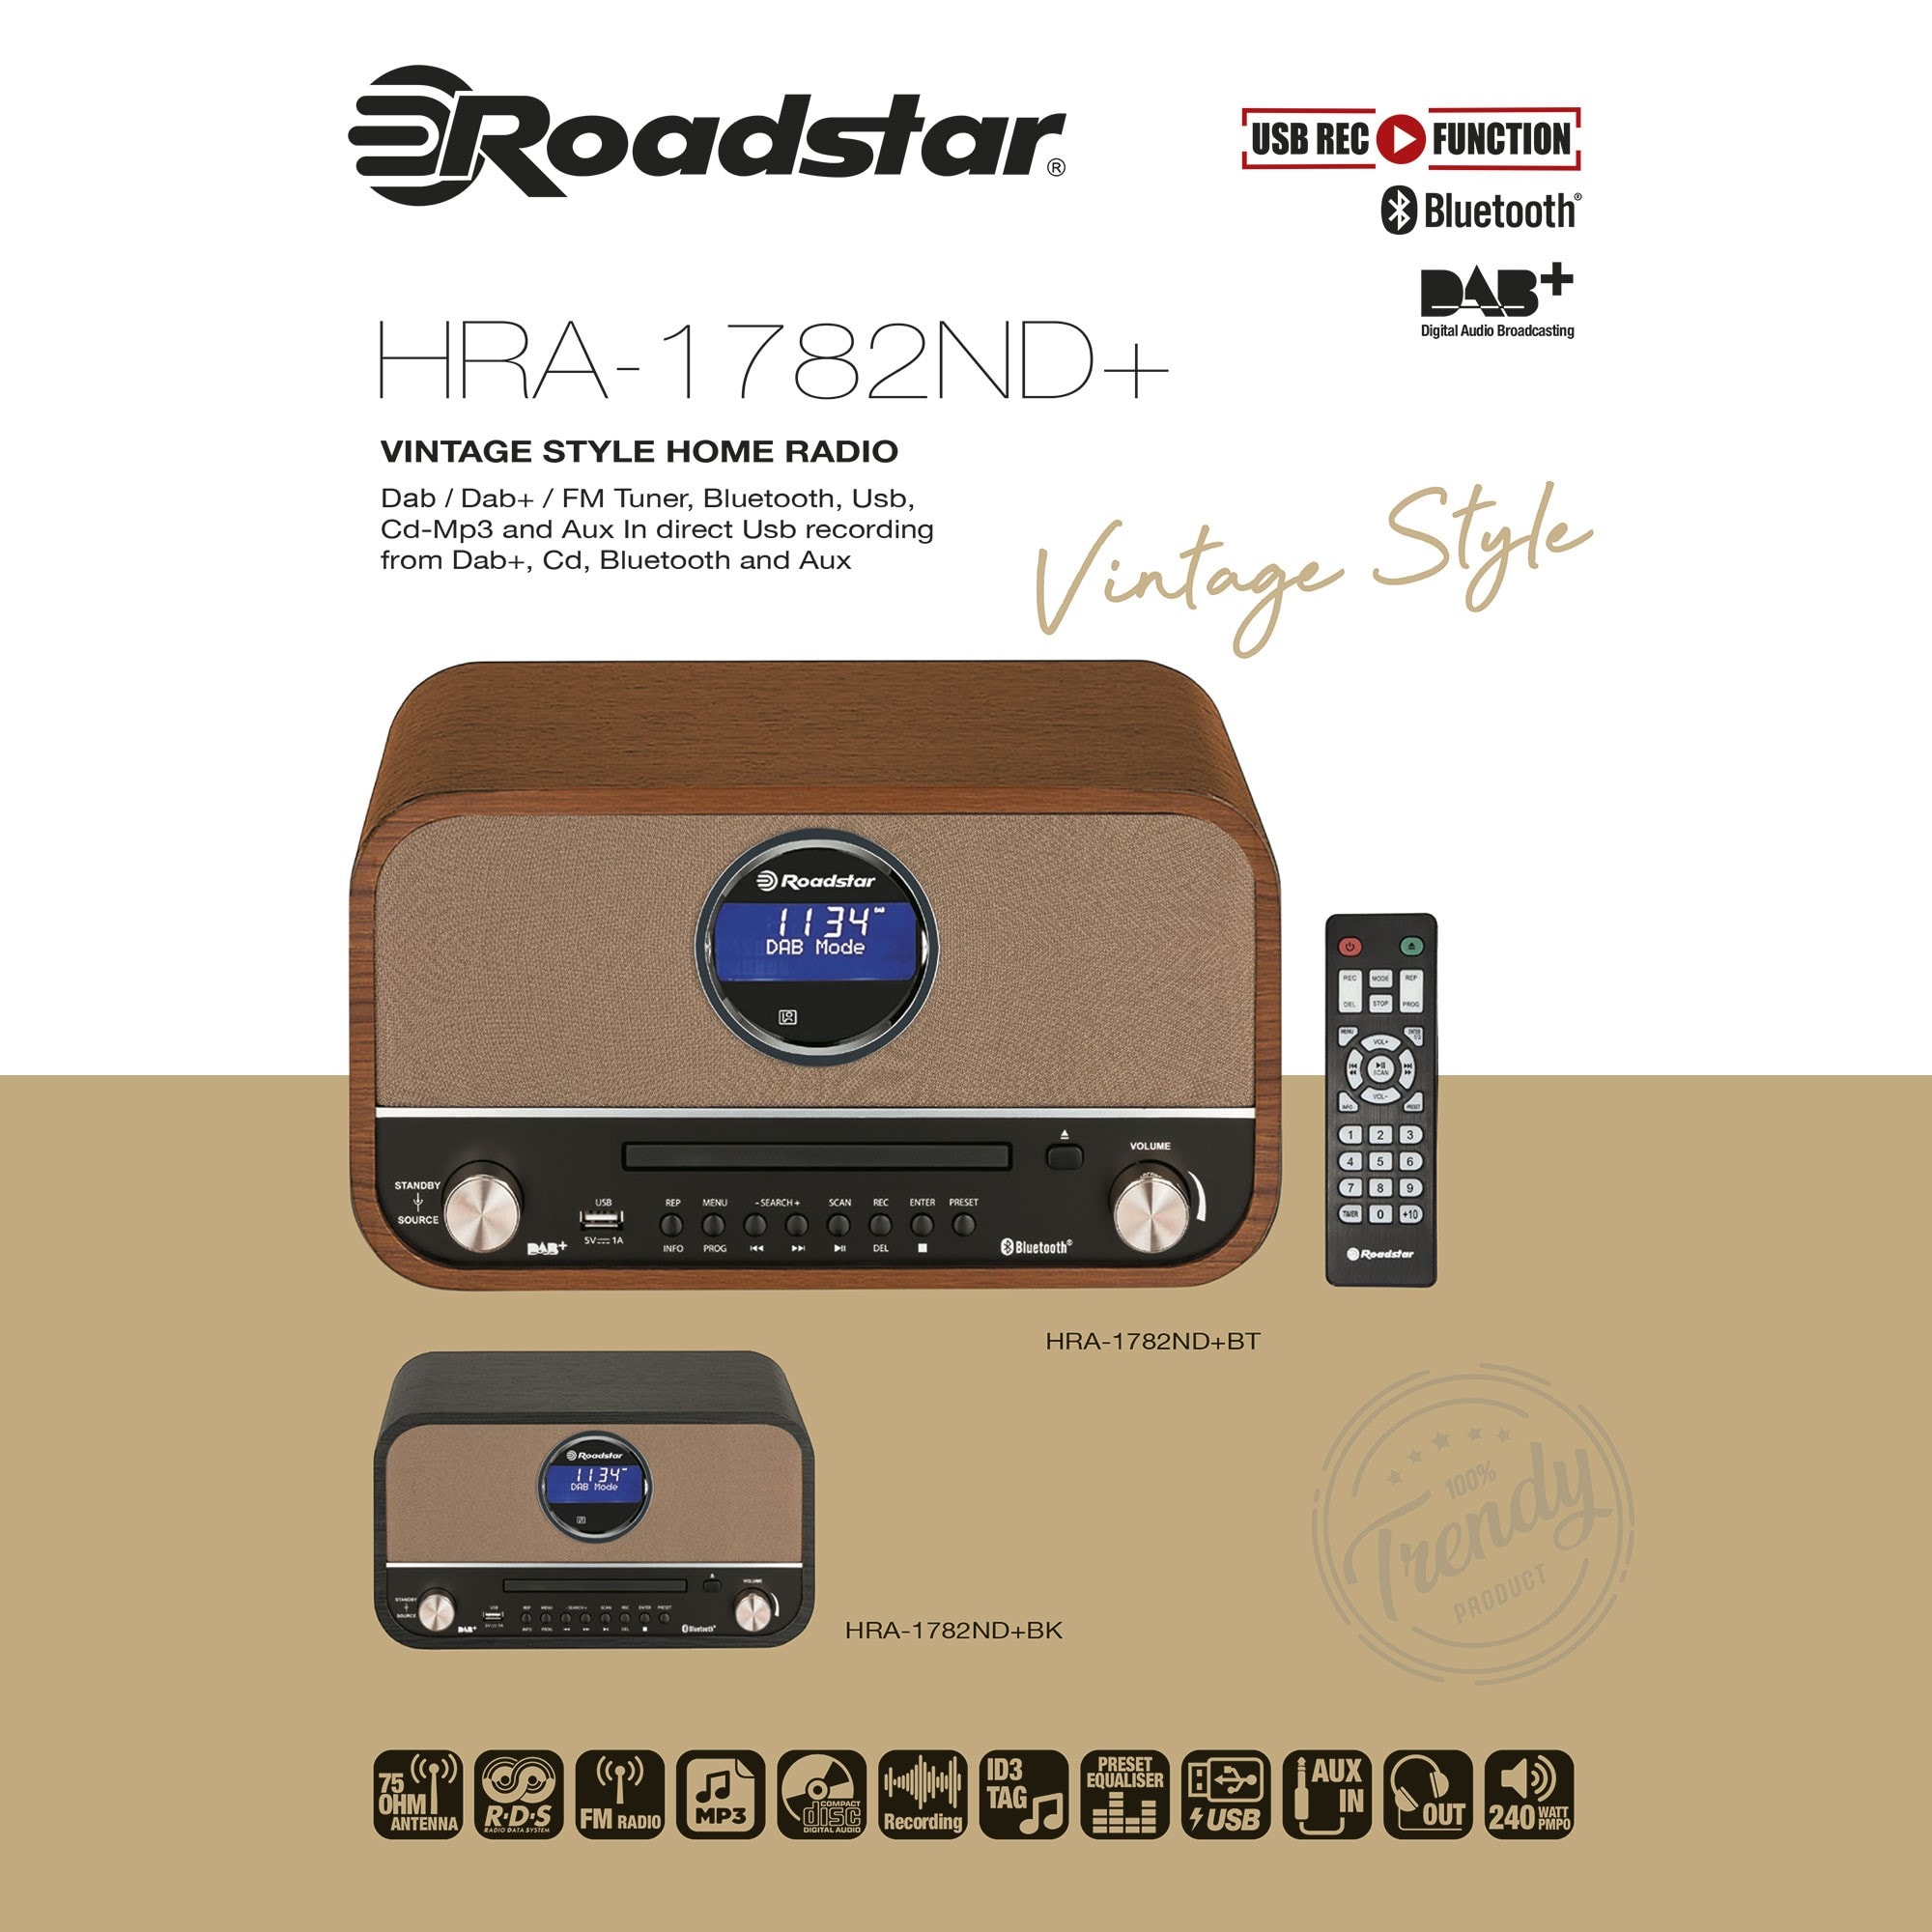 Radio CD Portable FM/ MW Vintage, Lecteur CD-MP3, USB, Stéréo